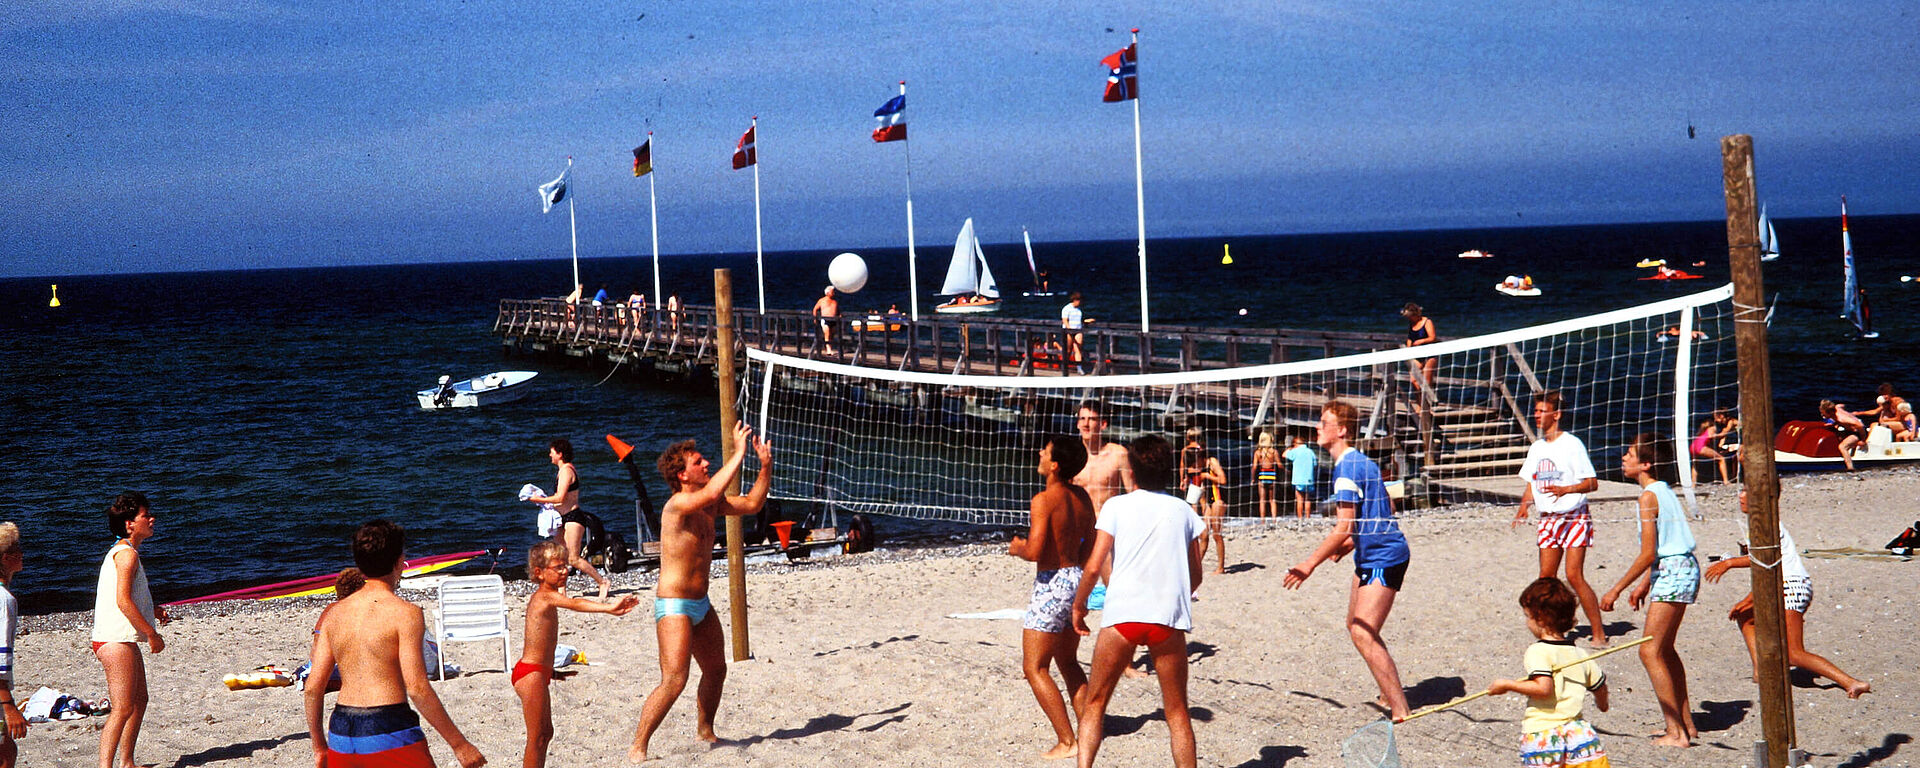 Weissenhäuser Strand Events an der Ostsee 50 Jahre WHS